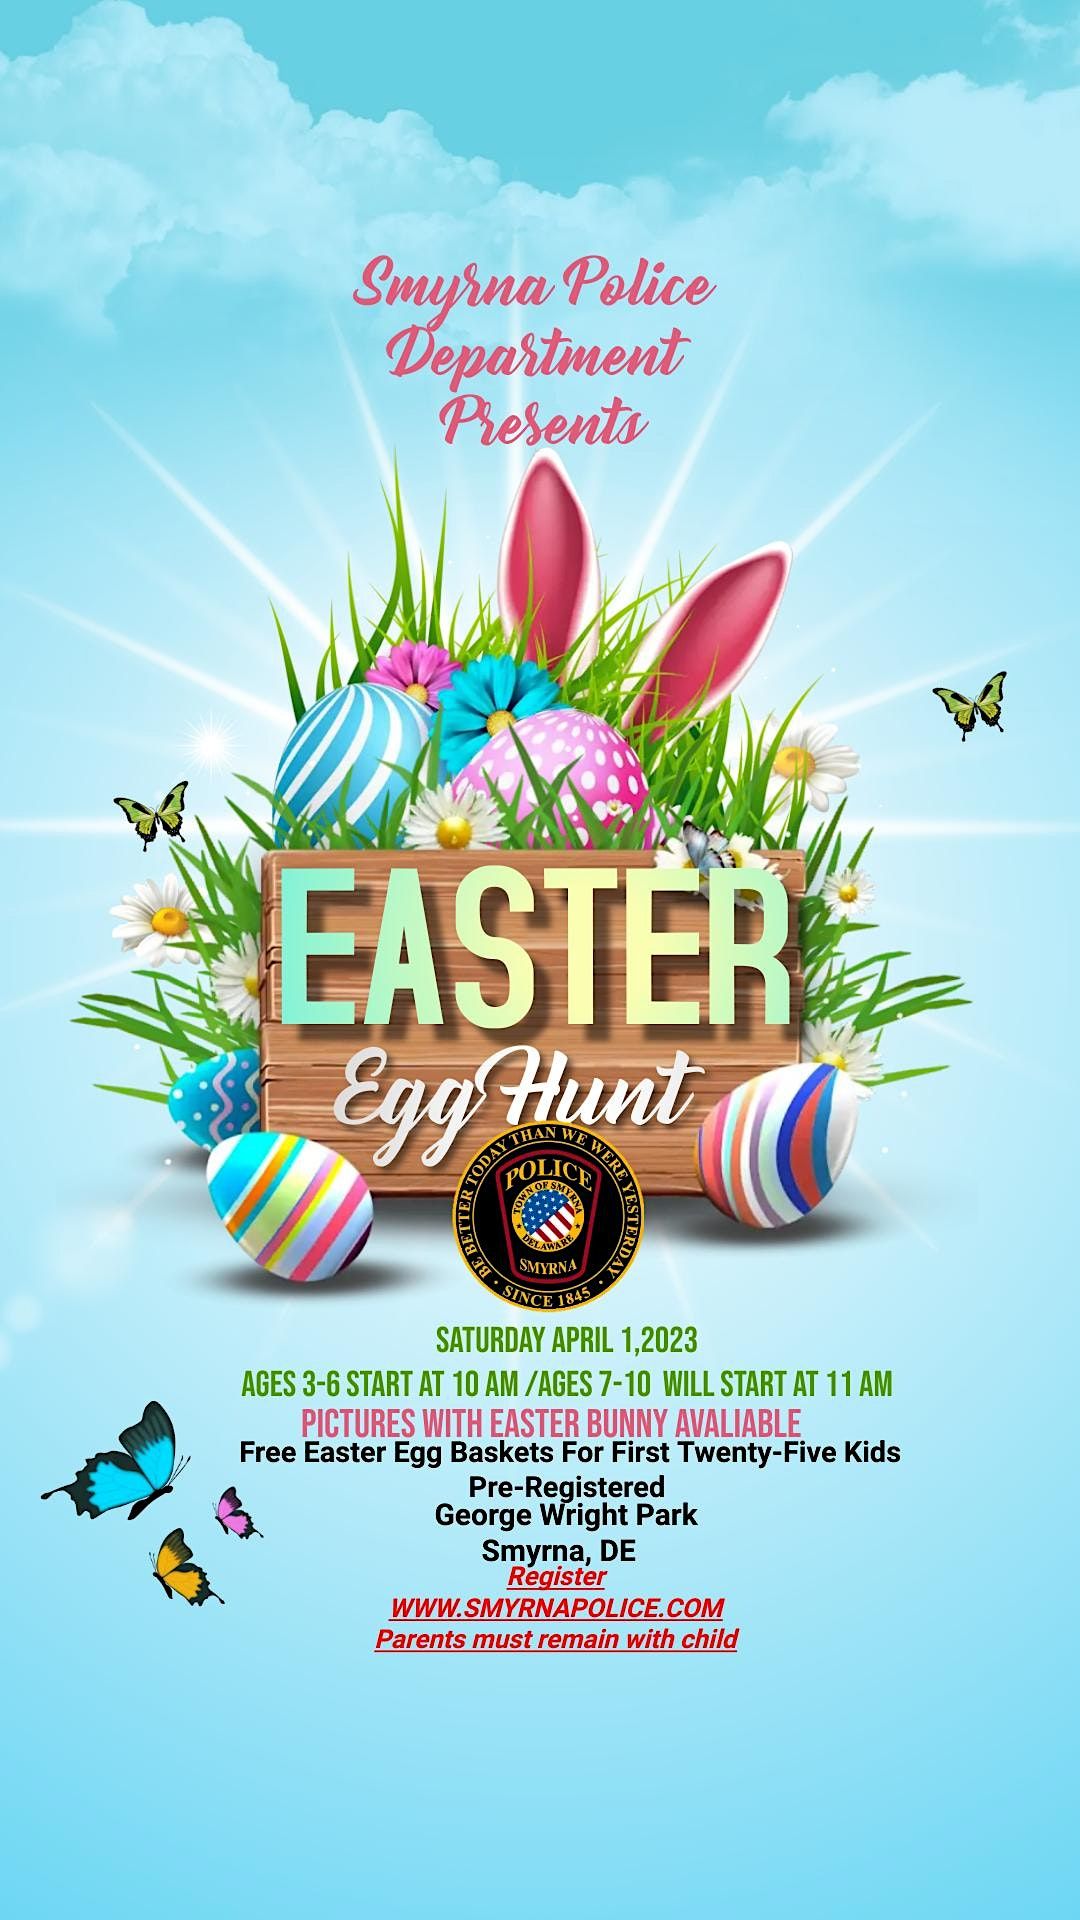 Smyrna Police Department Easter Egg Hunt Smyrna April 1, 2023